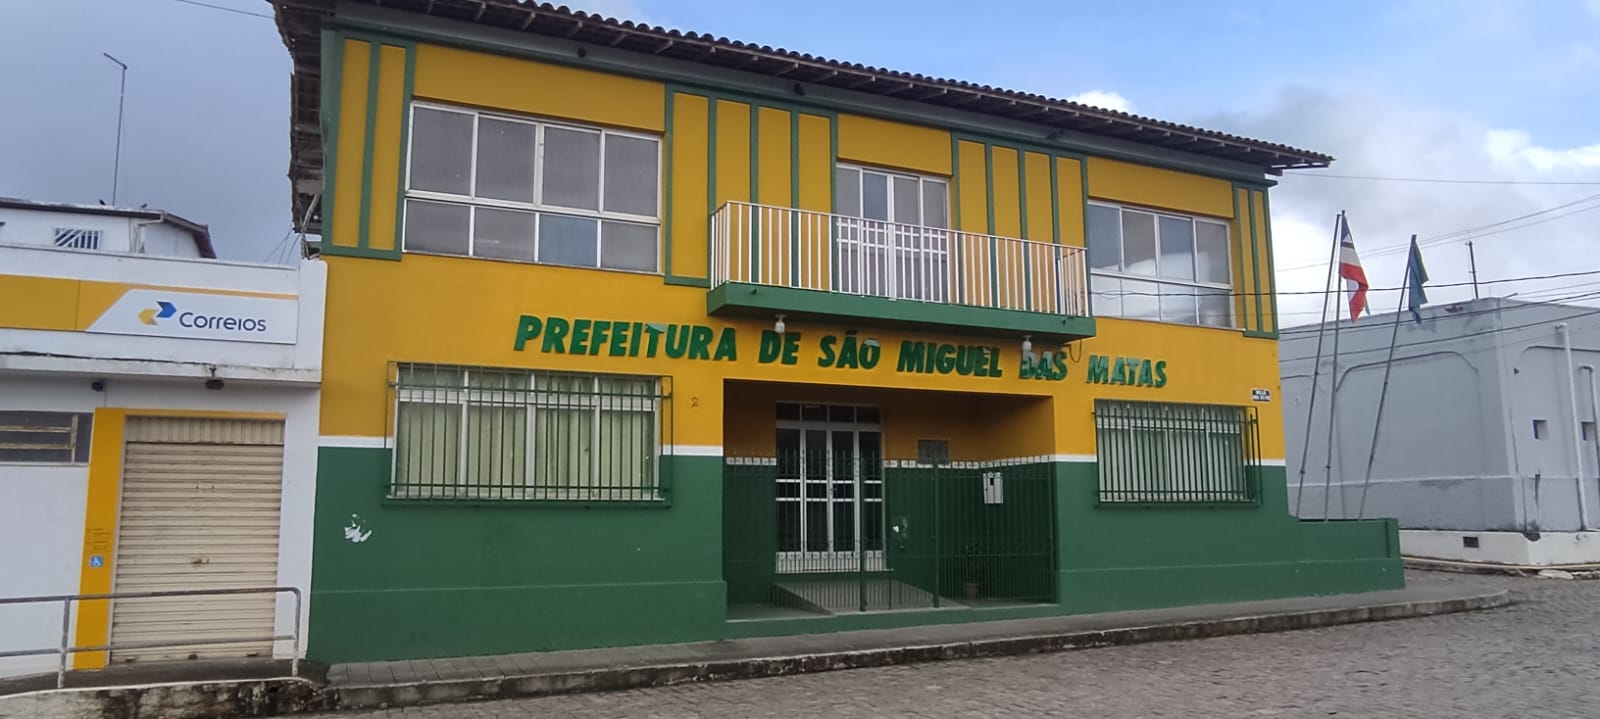 Prefeitura de São Miguel